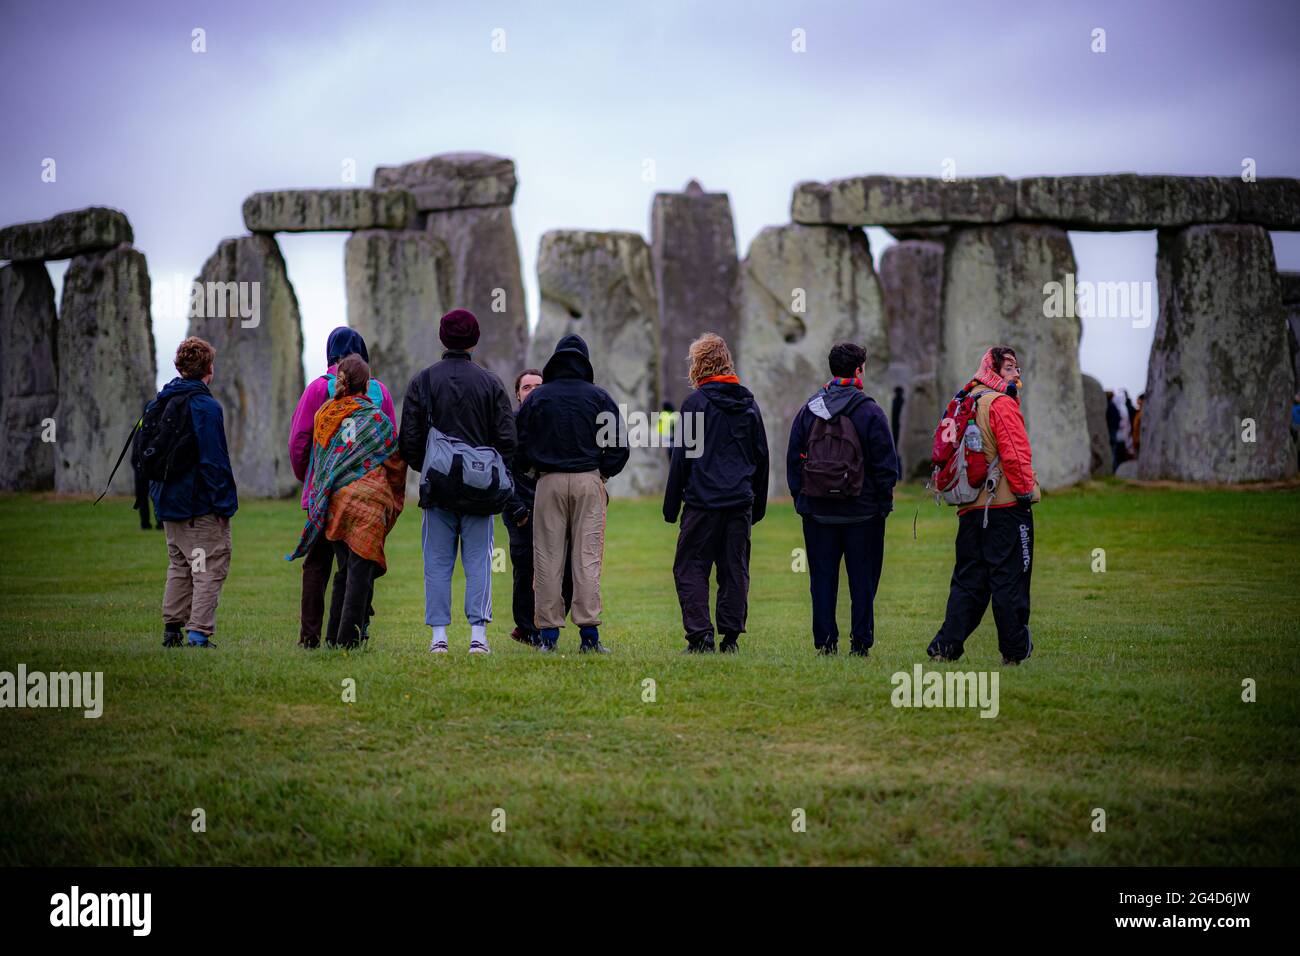 Während der Sommersonnenwende in Stonehenge sehen die Menschen die Steine, wo einige Menschen über den Zaun sprangen, um den Steinkreis zu betreten und den Sonnenaufgang am längsten Tag in Großbritannien zu beobachten. Die Steine wurden für die Feierlichkeiten, bei denen große Menschenmengen im Kreis zu sehen sind, aufgrund der Coronavirus-Lockdown-Erweiterung offiziell geschlossen. Bilddatum: Montag, 21. Juni 2021. Stockfoto